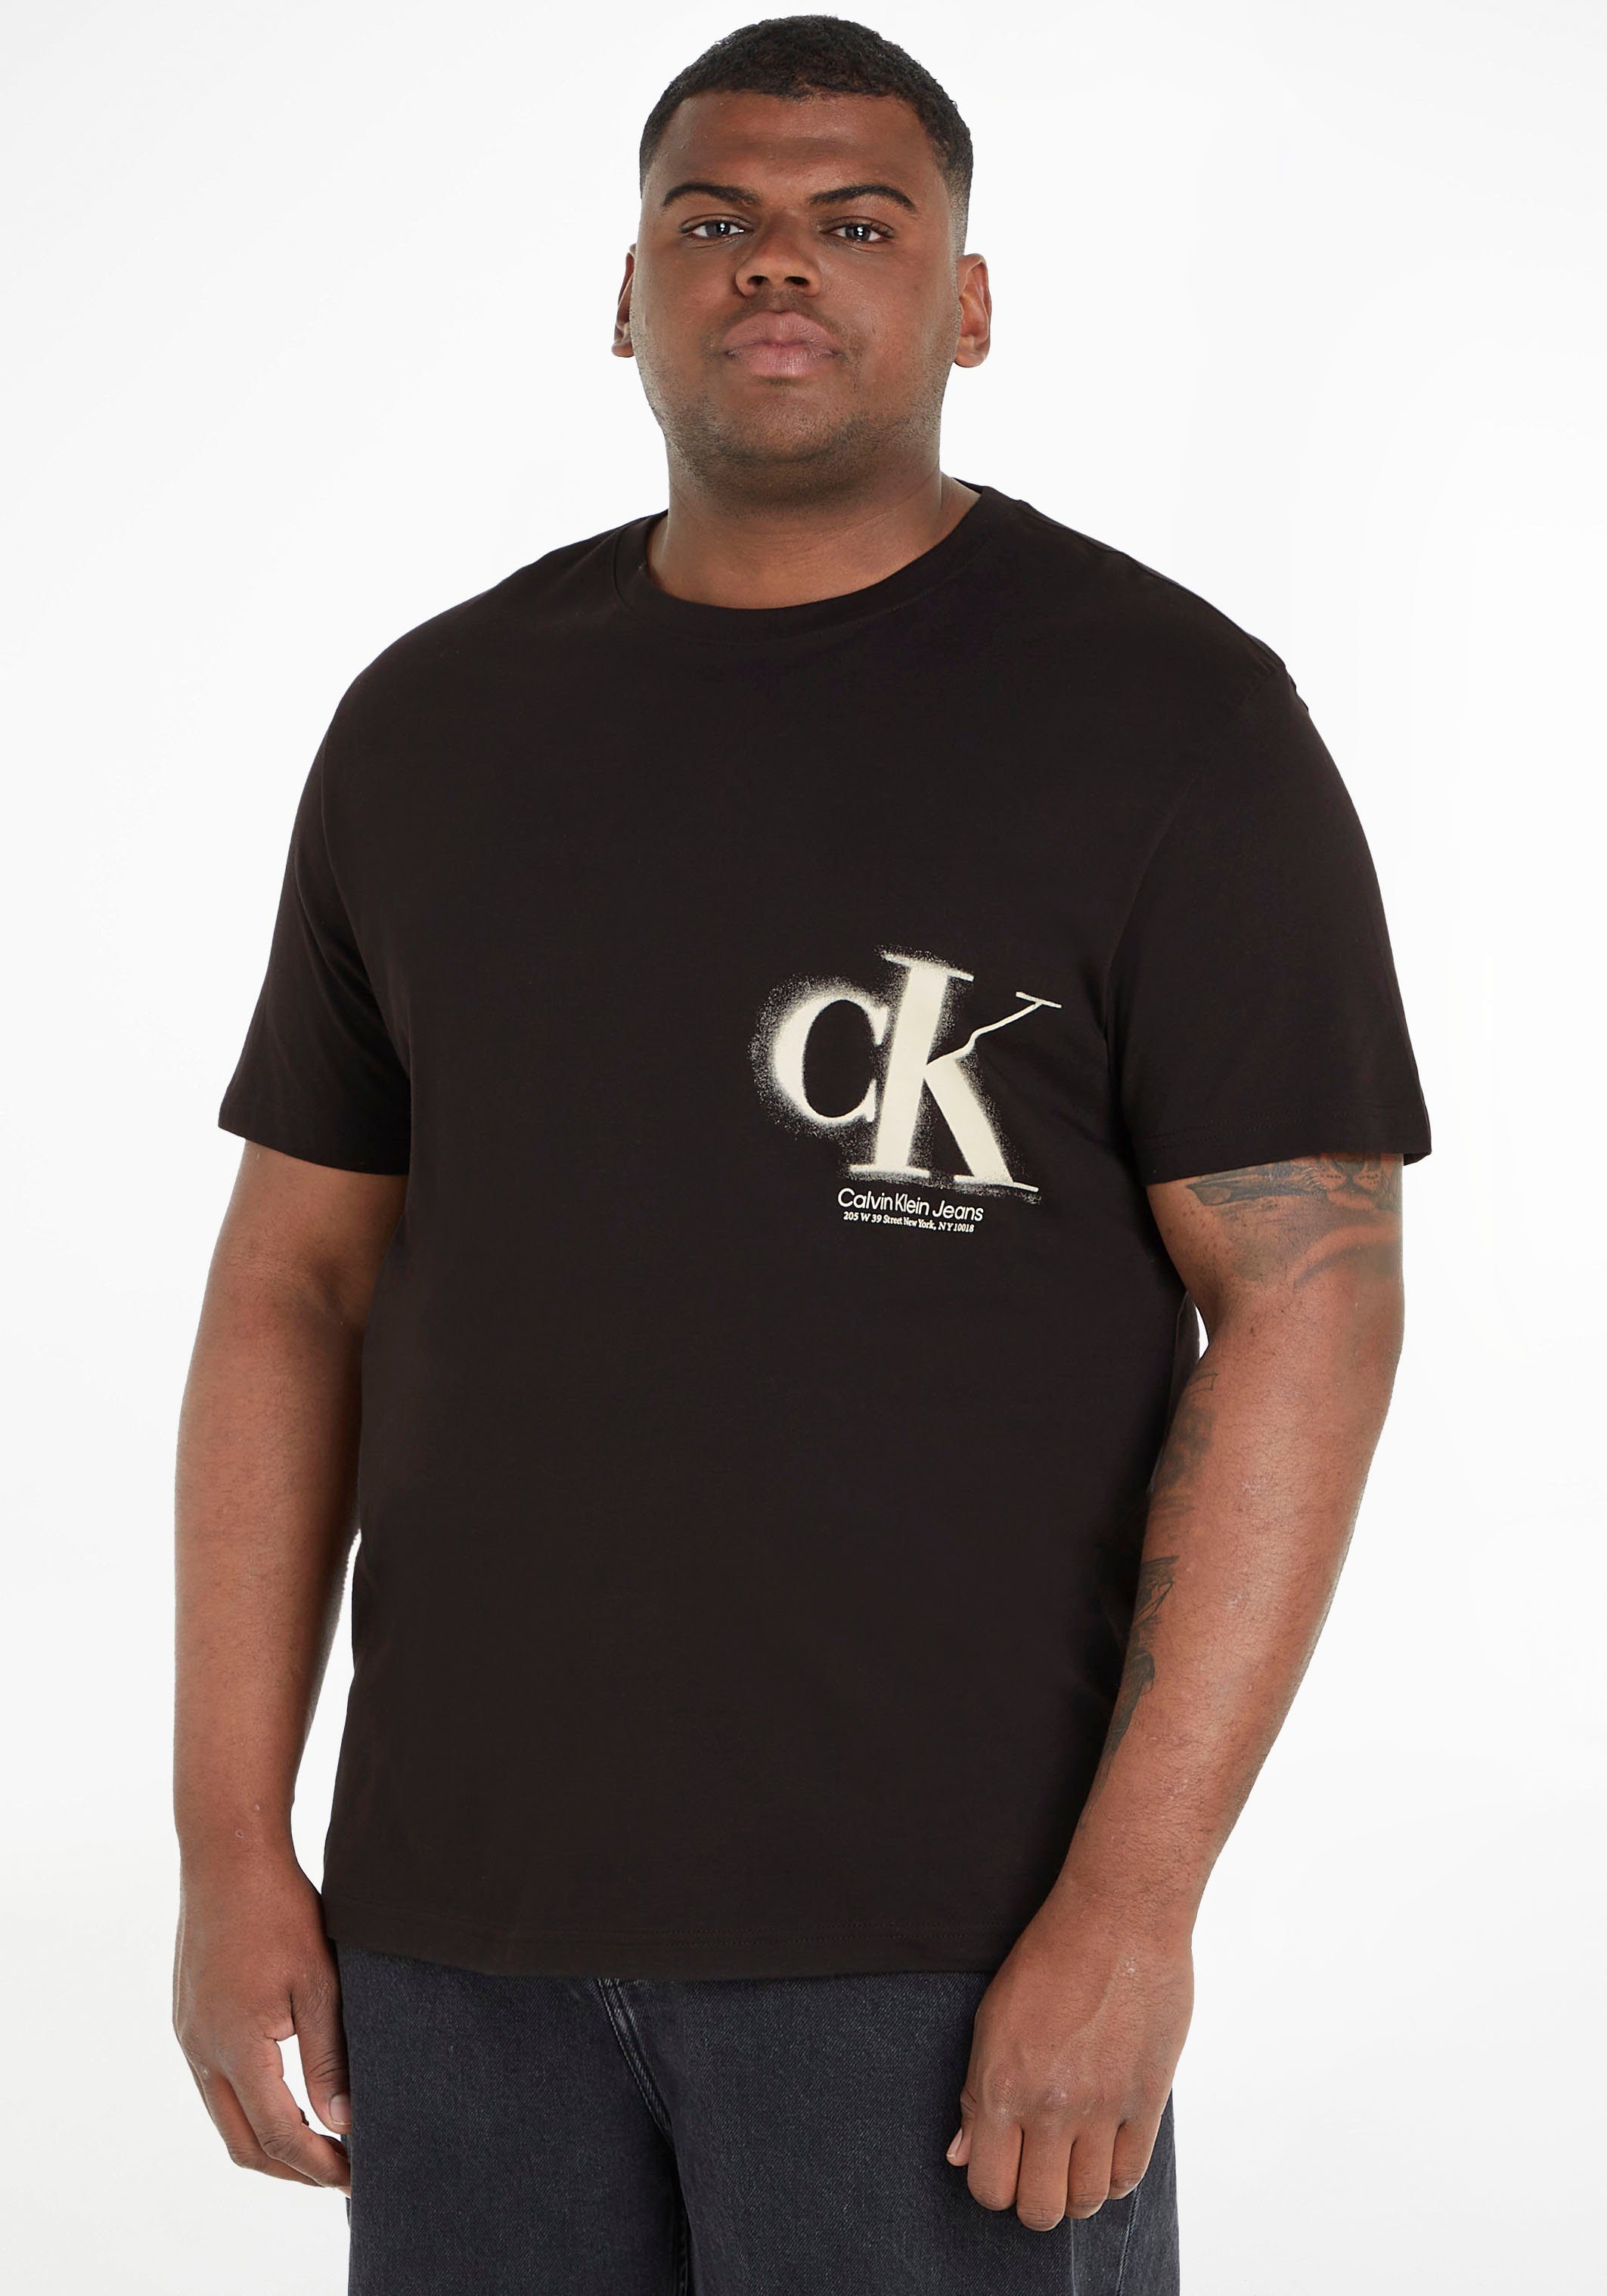 Calvin Klein Jeans Plus T-Shirt mit Rundhalsauschnitt schwarz